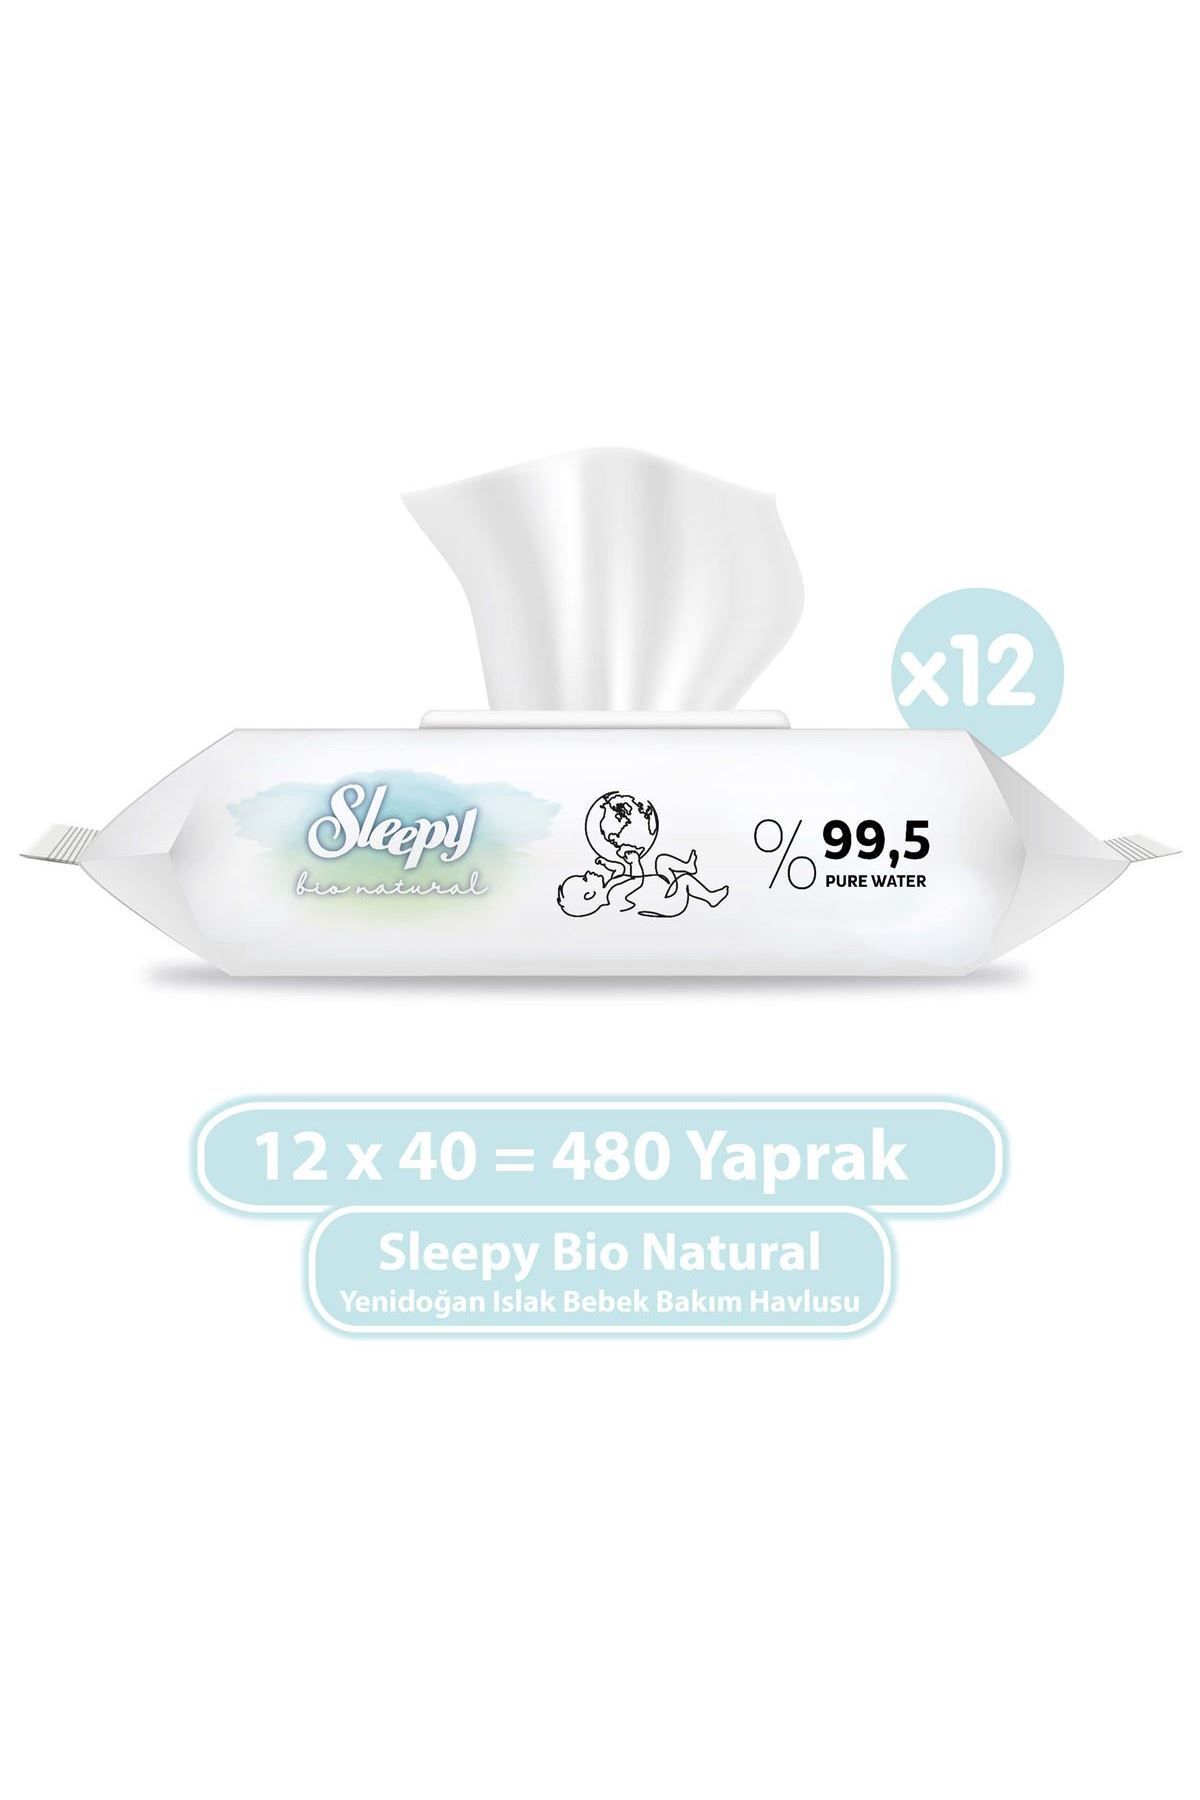 Sleepy Bio Natural Yenidoğan Islak Bebek Bakım Havlusu 12x40 (480 YAPRAK)